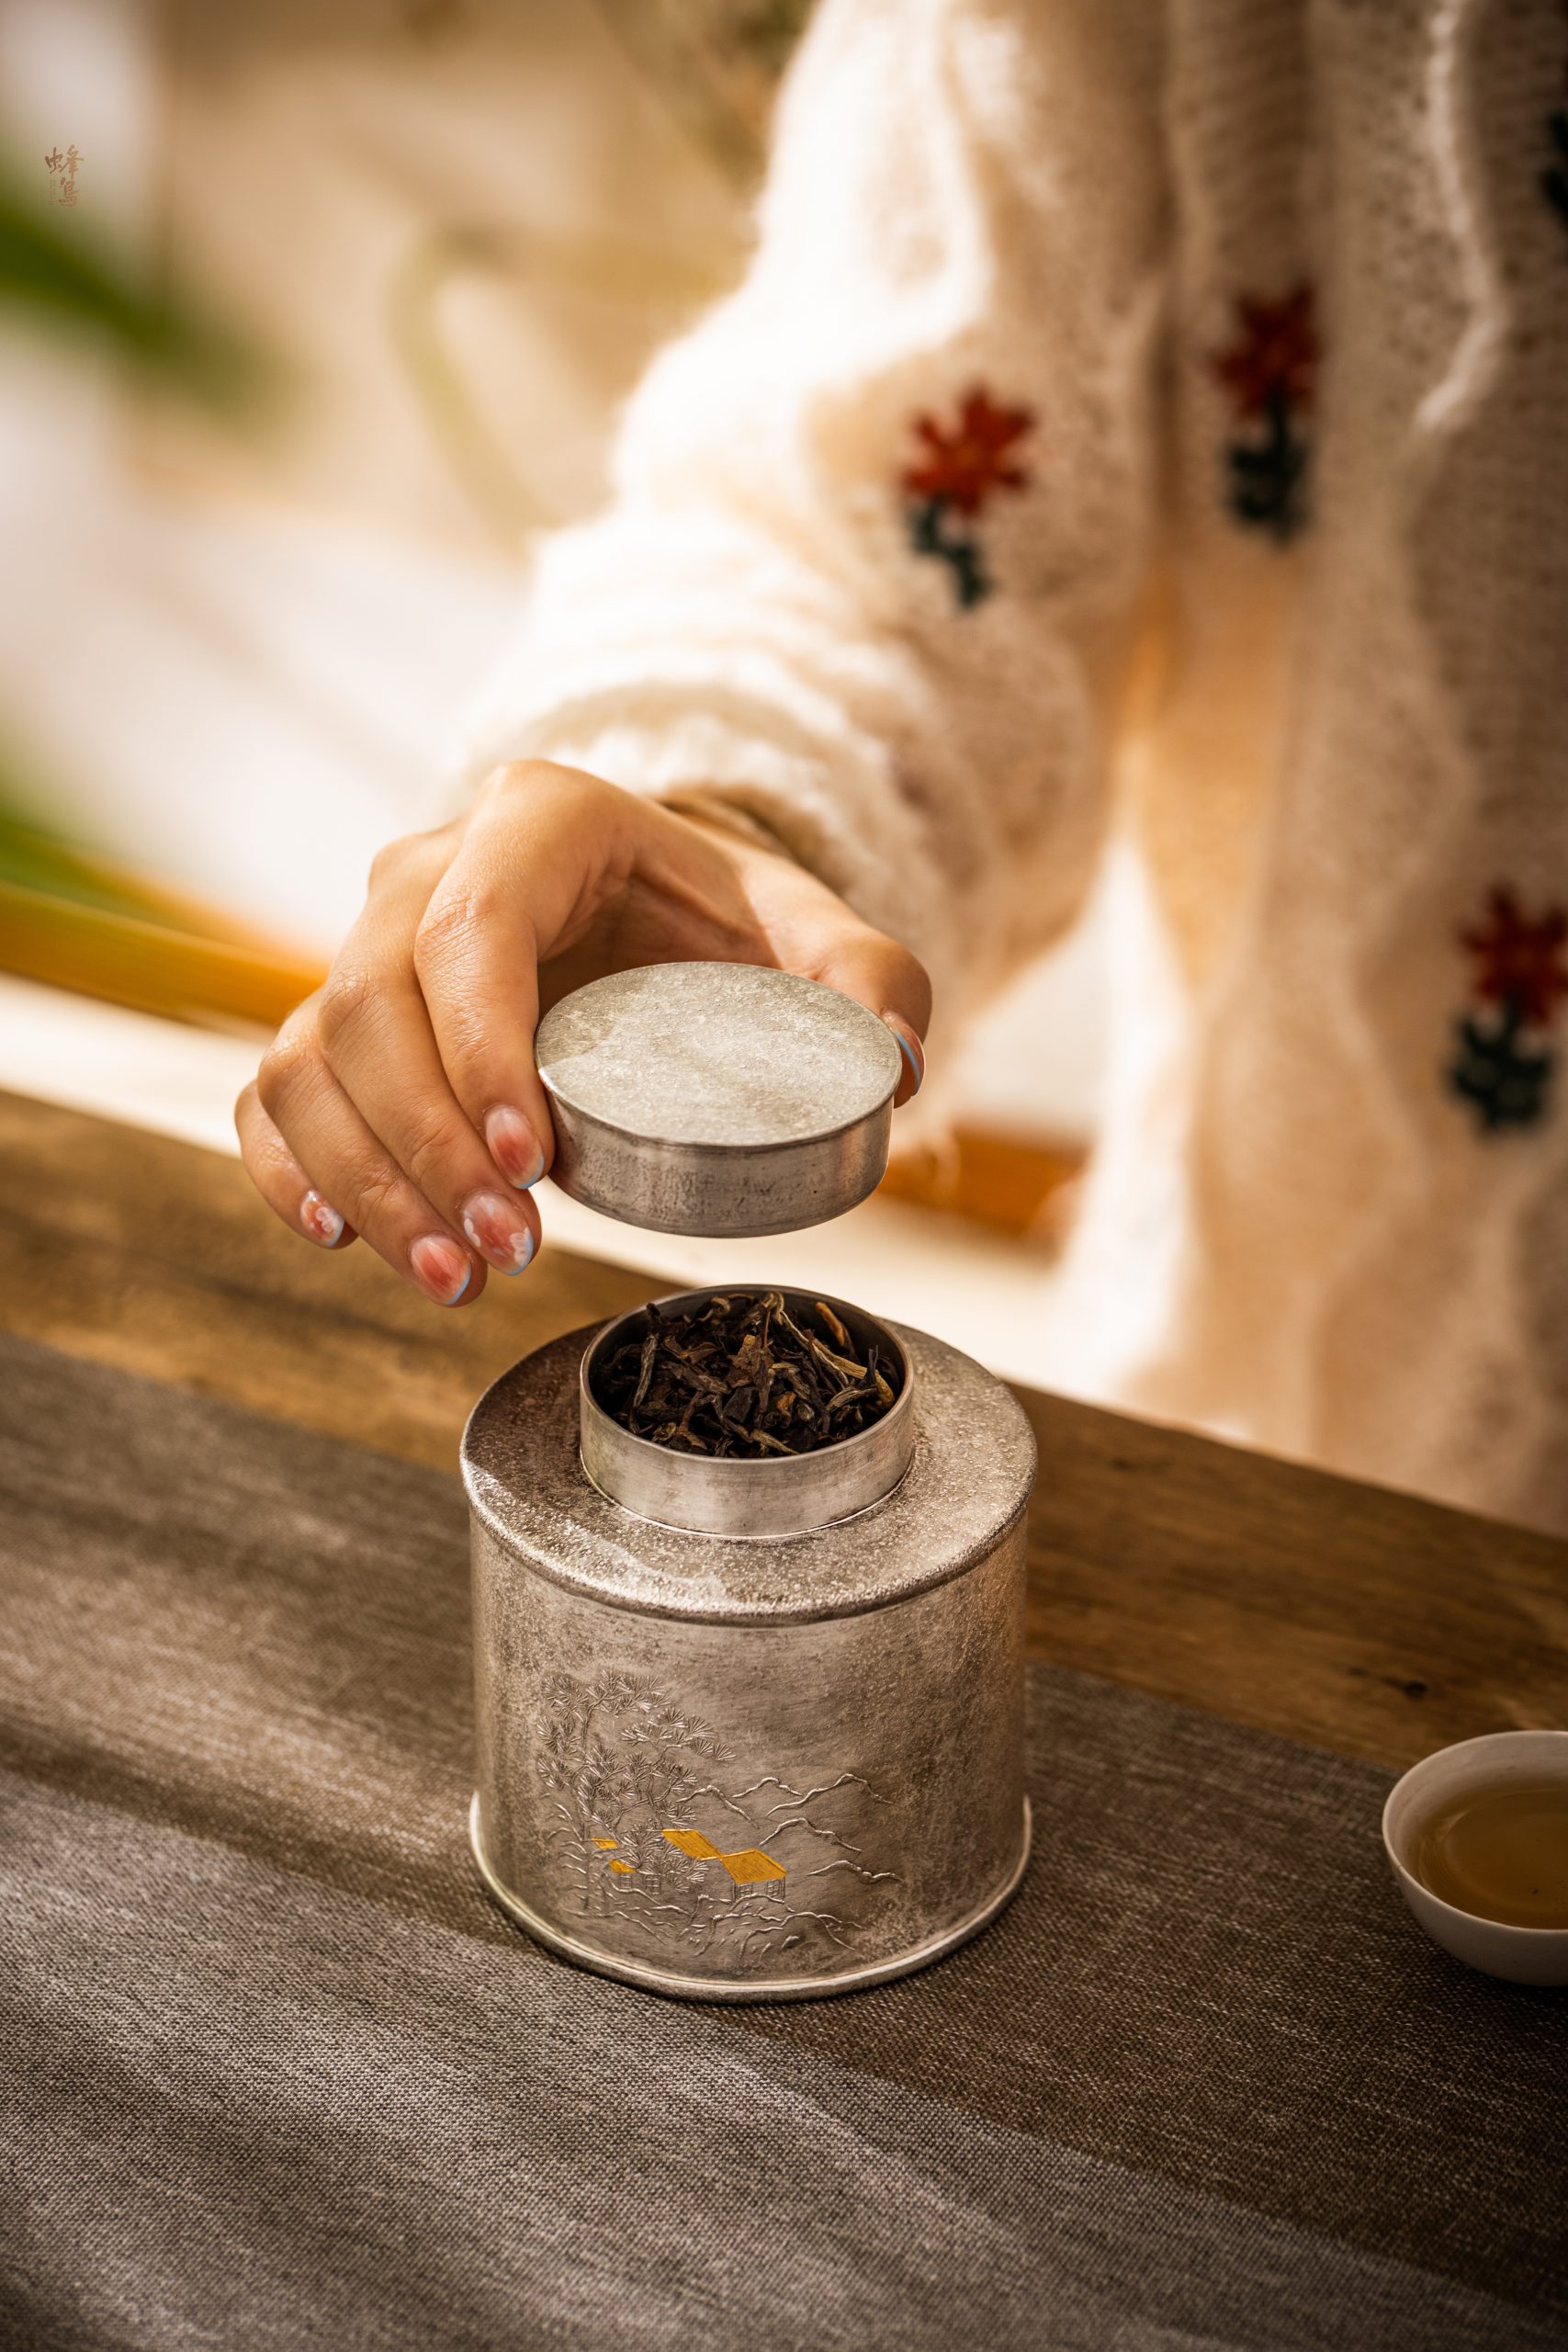 还为存茶而烦恼？试试这款纯锡茶叶罐，让你好茶添香！